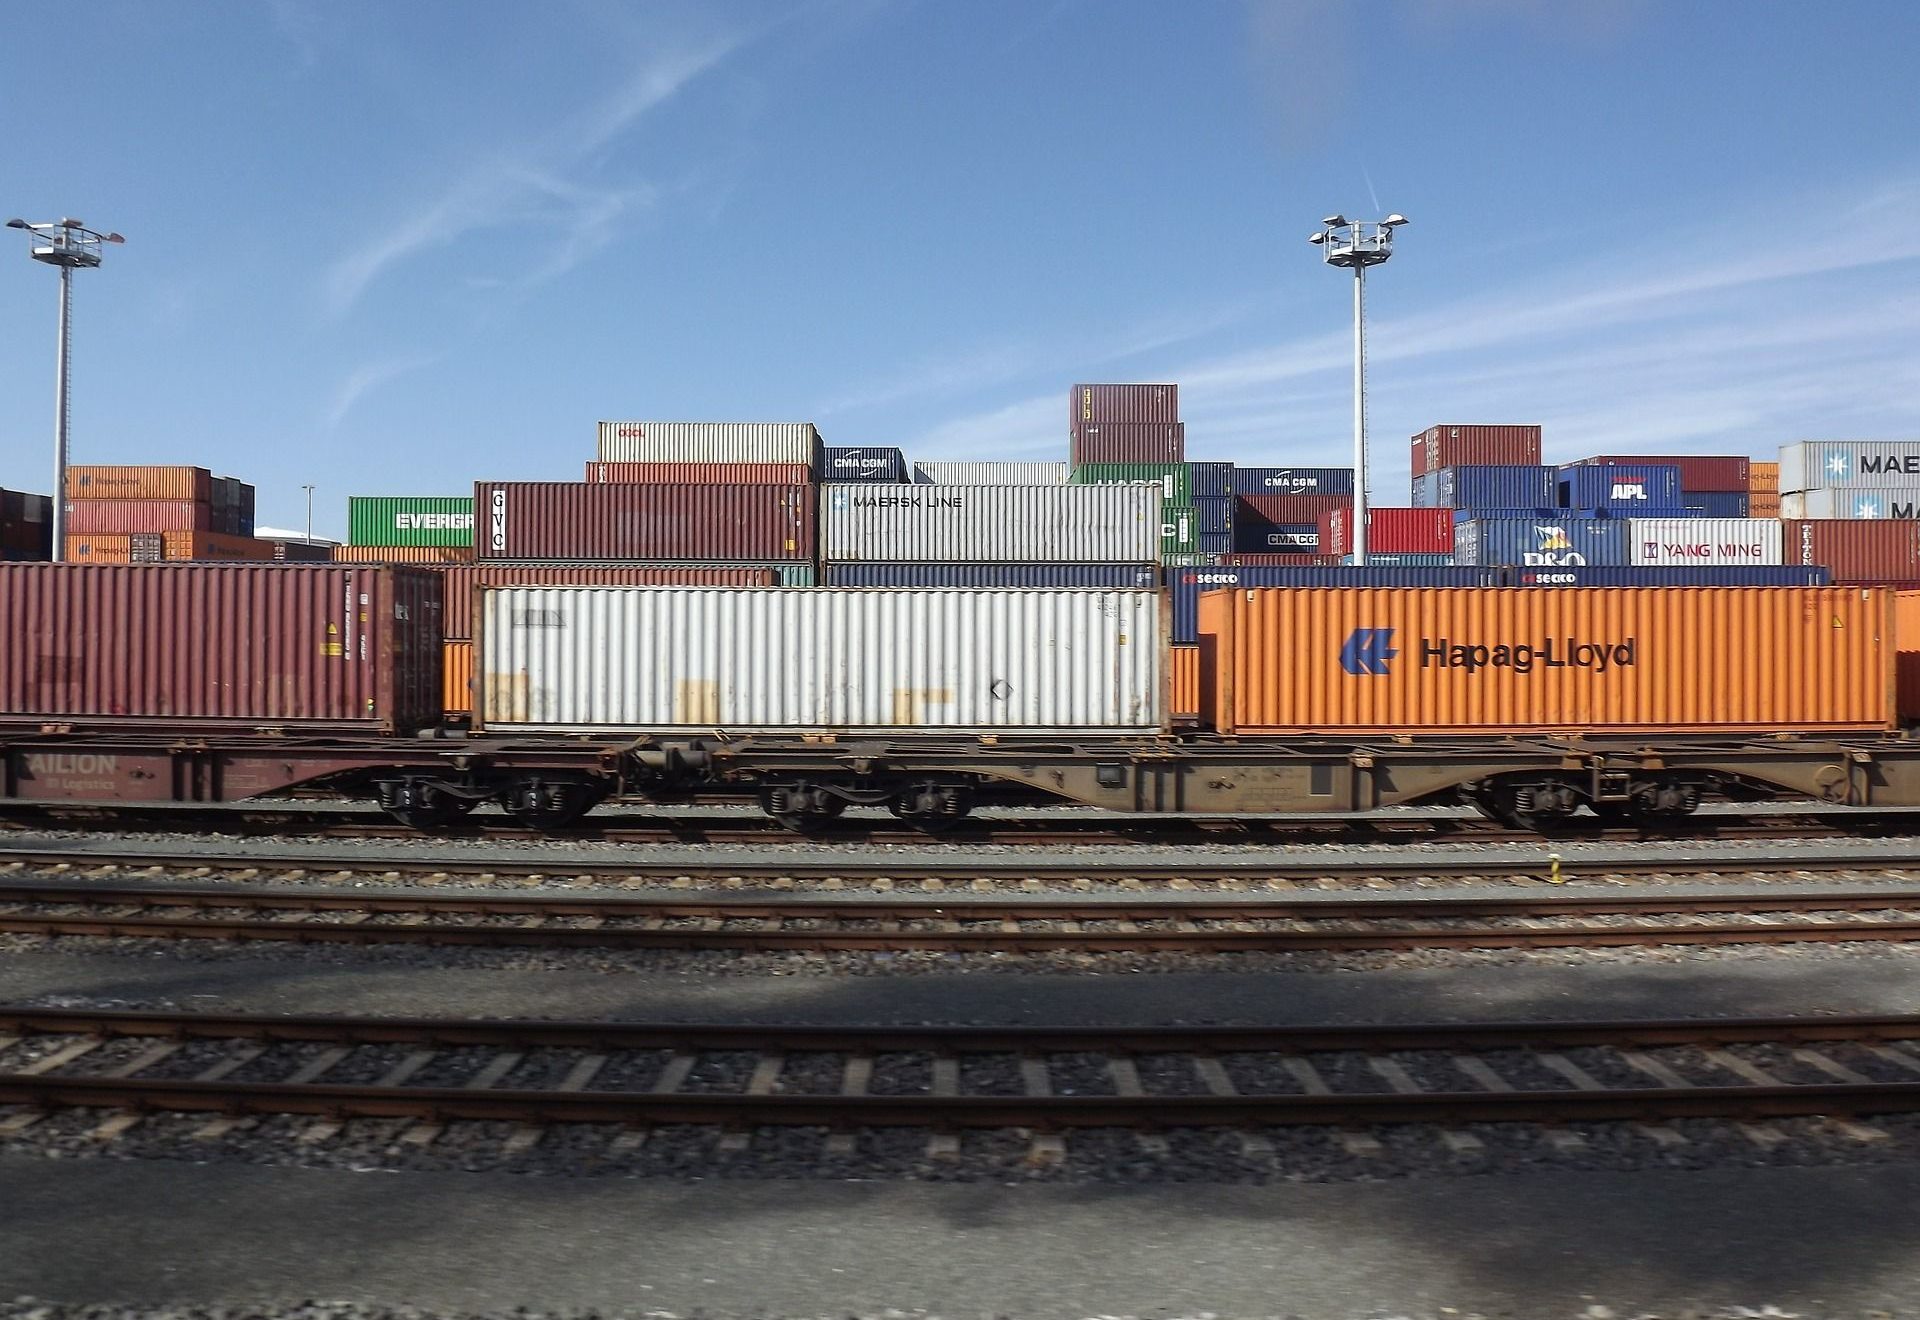 Güterwaggons auf Schienen